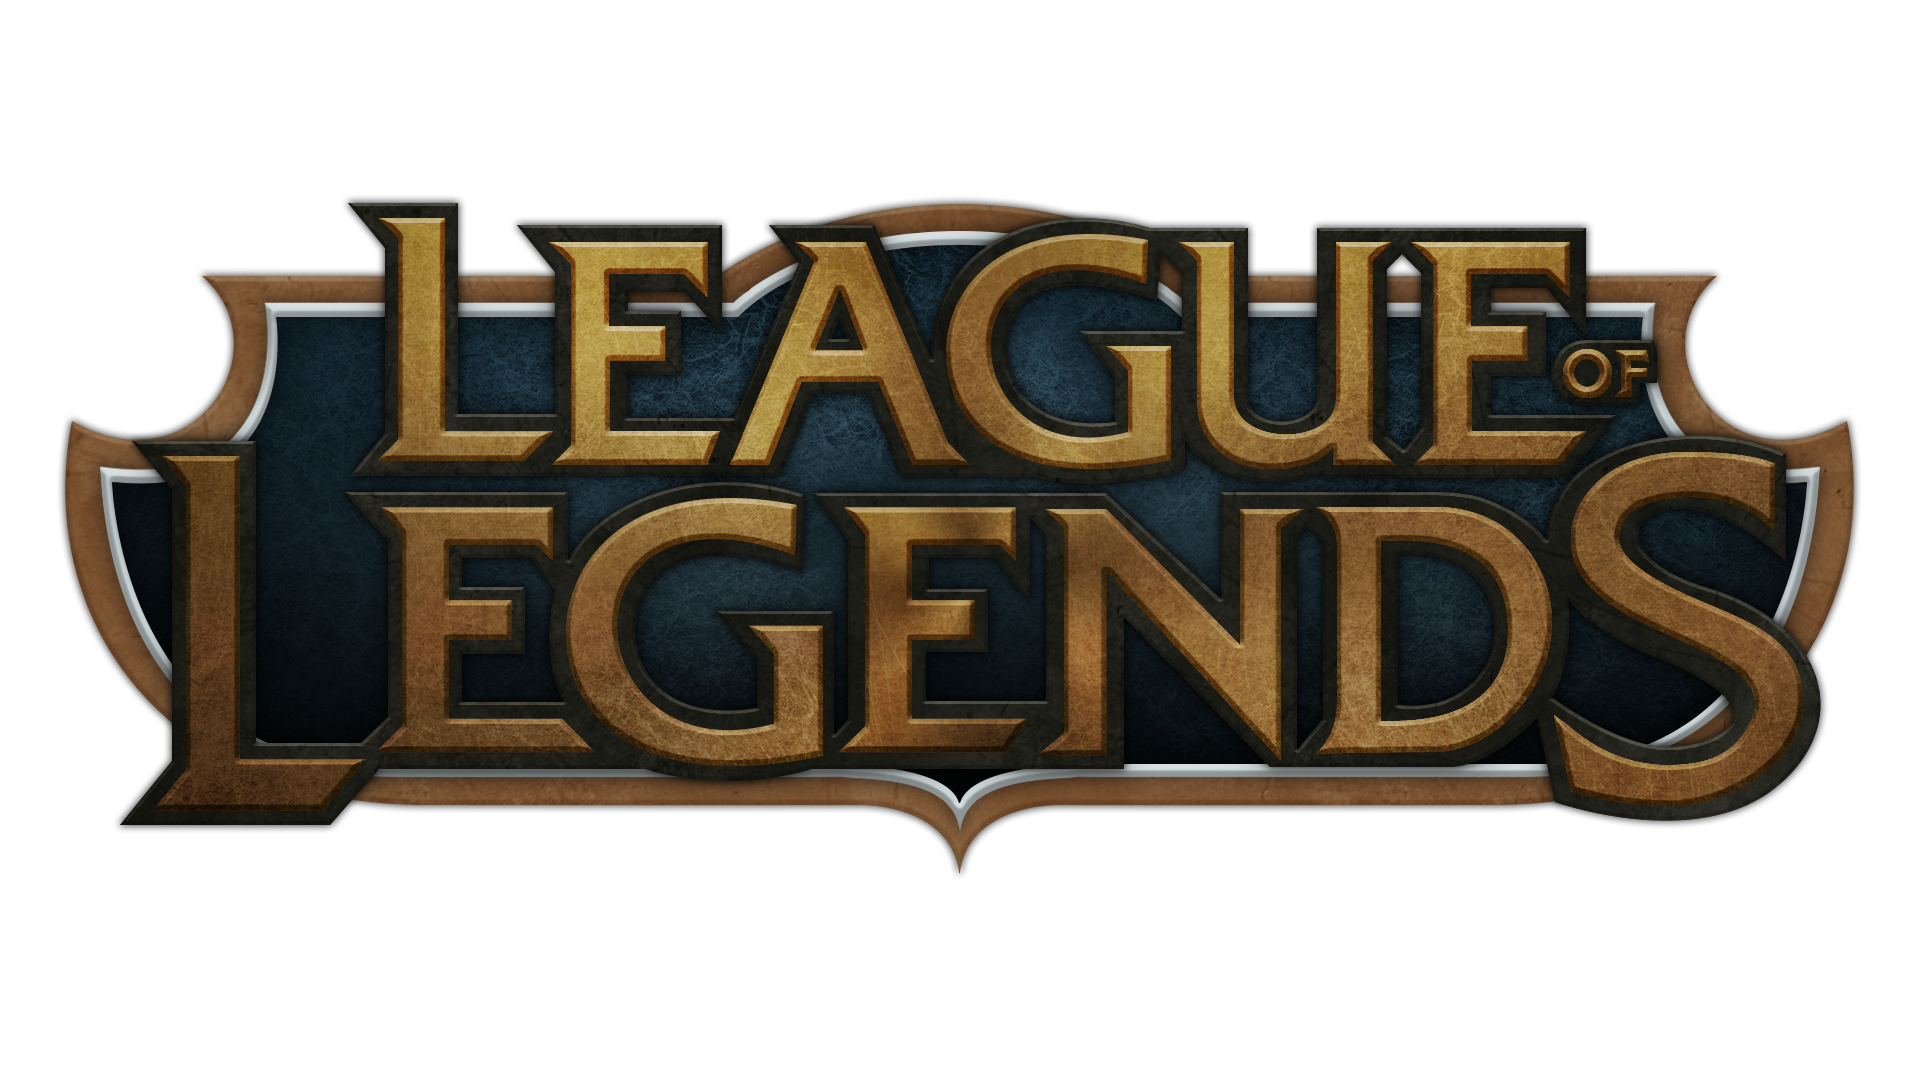 League Of Legends Png Image P